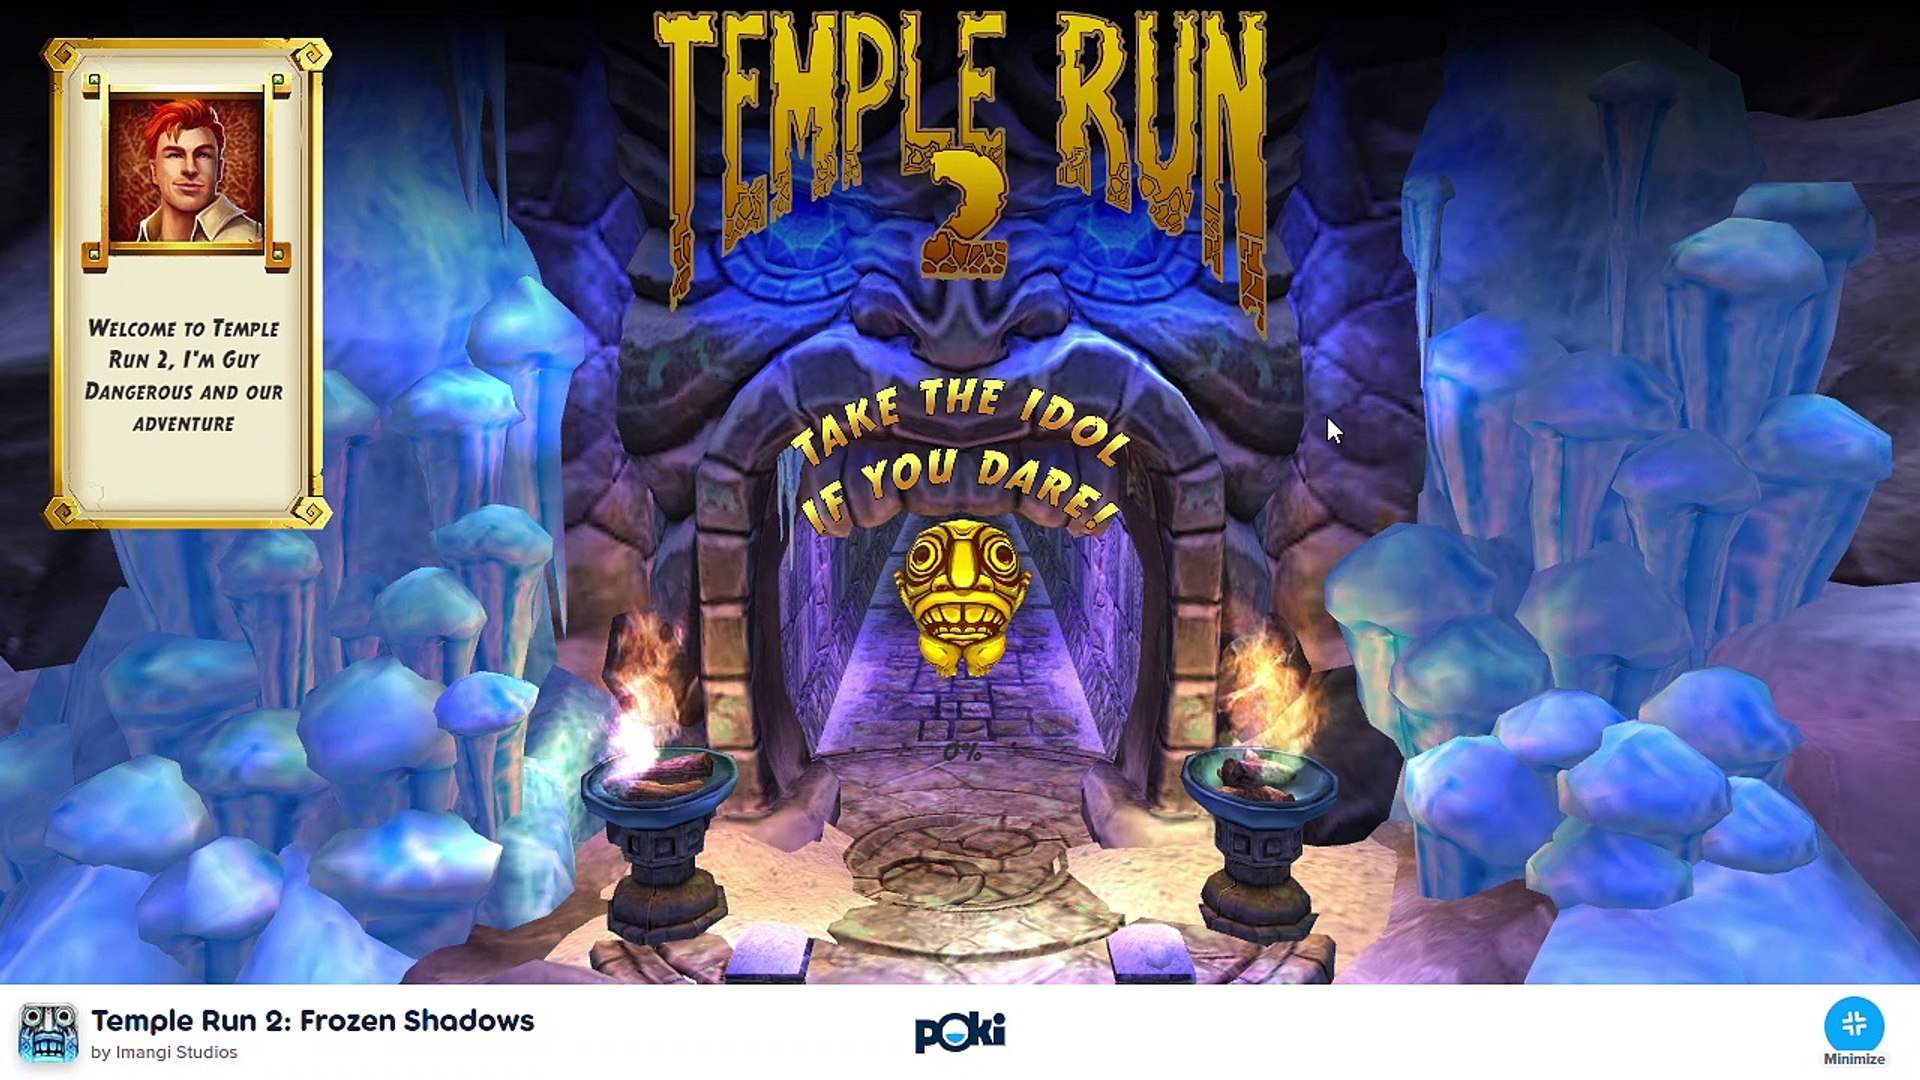 Poki - Temple Run 2 